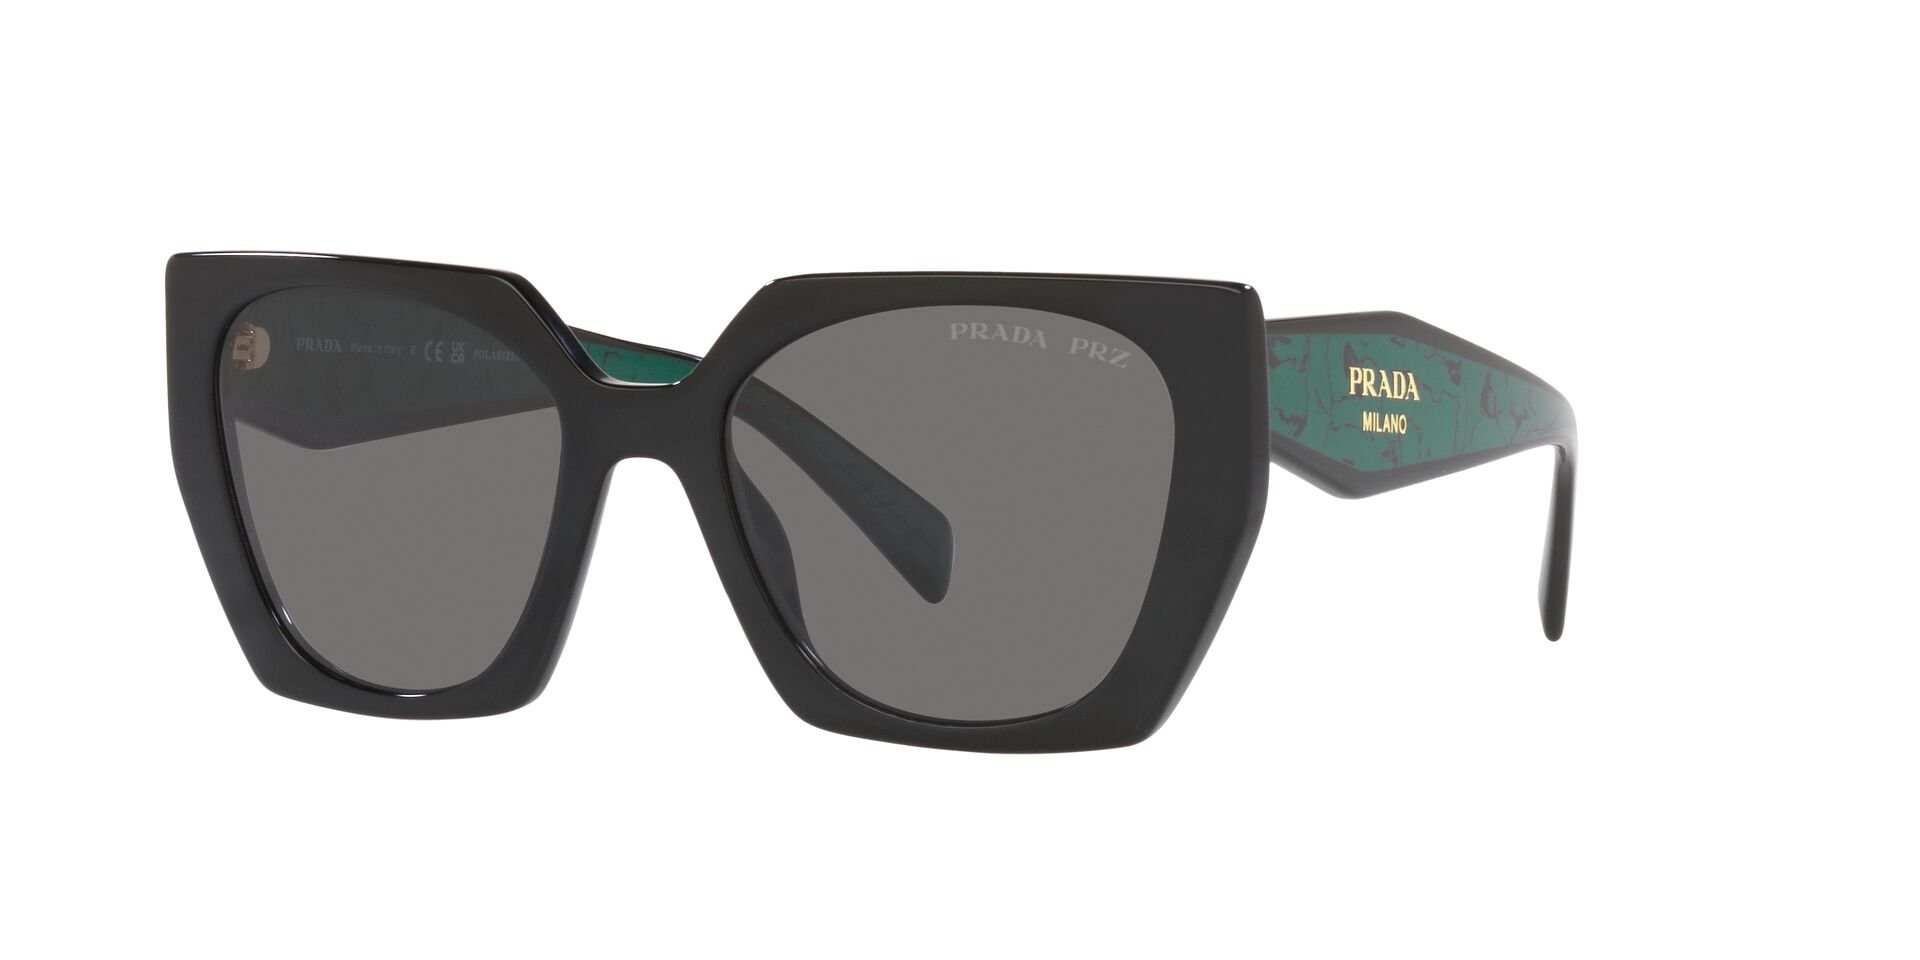 Das Bild zeigt die Sonnenbrille PR15WS 1AB5Z1 von der Marke Prada in schwarz.